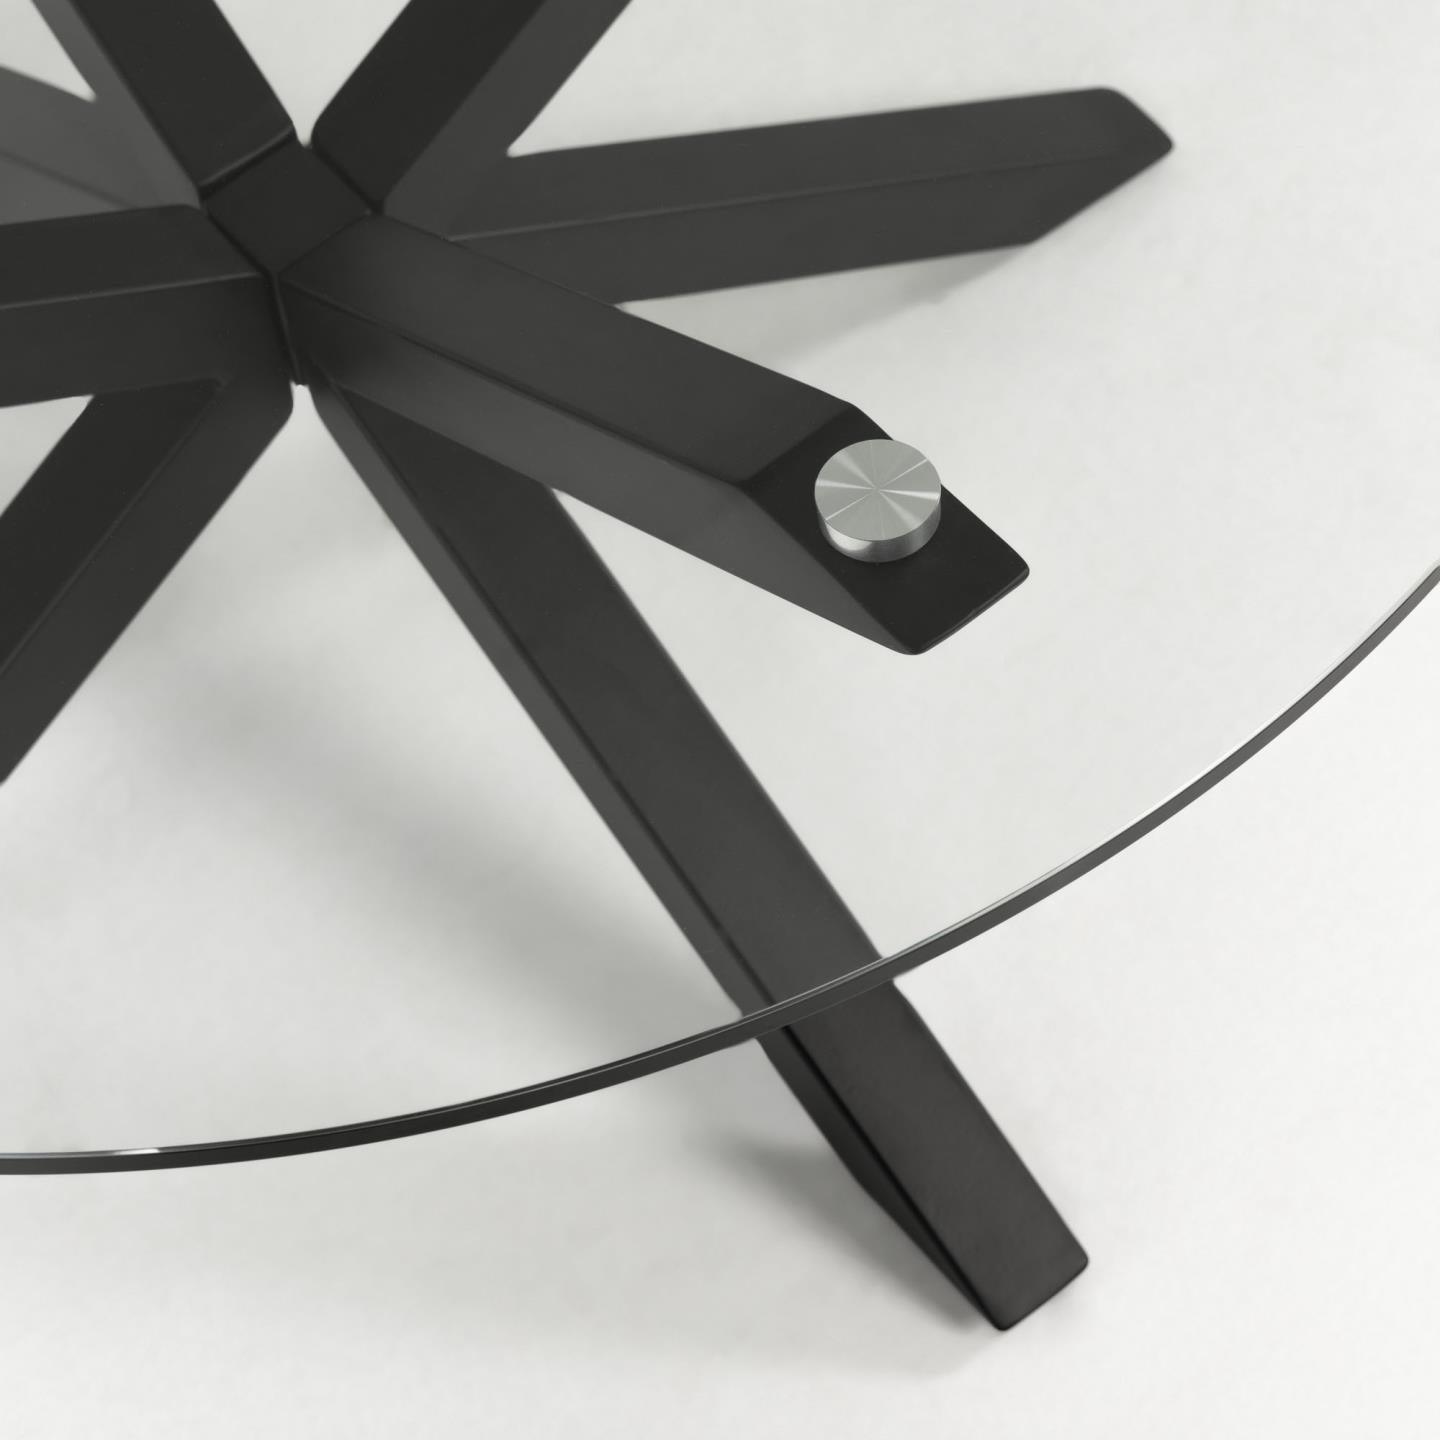 Stół okrągły ARGO szklany z czarną podstawą La Forma    Eye on Design